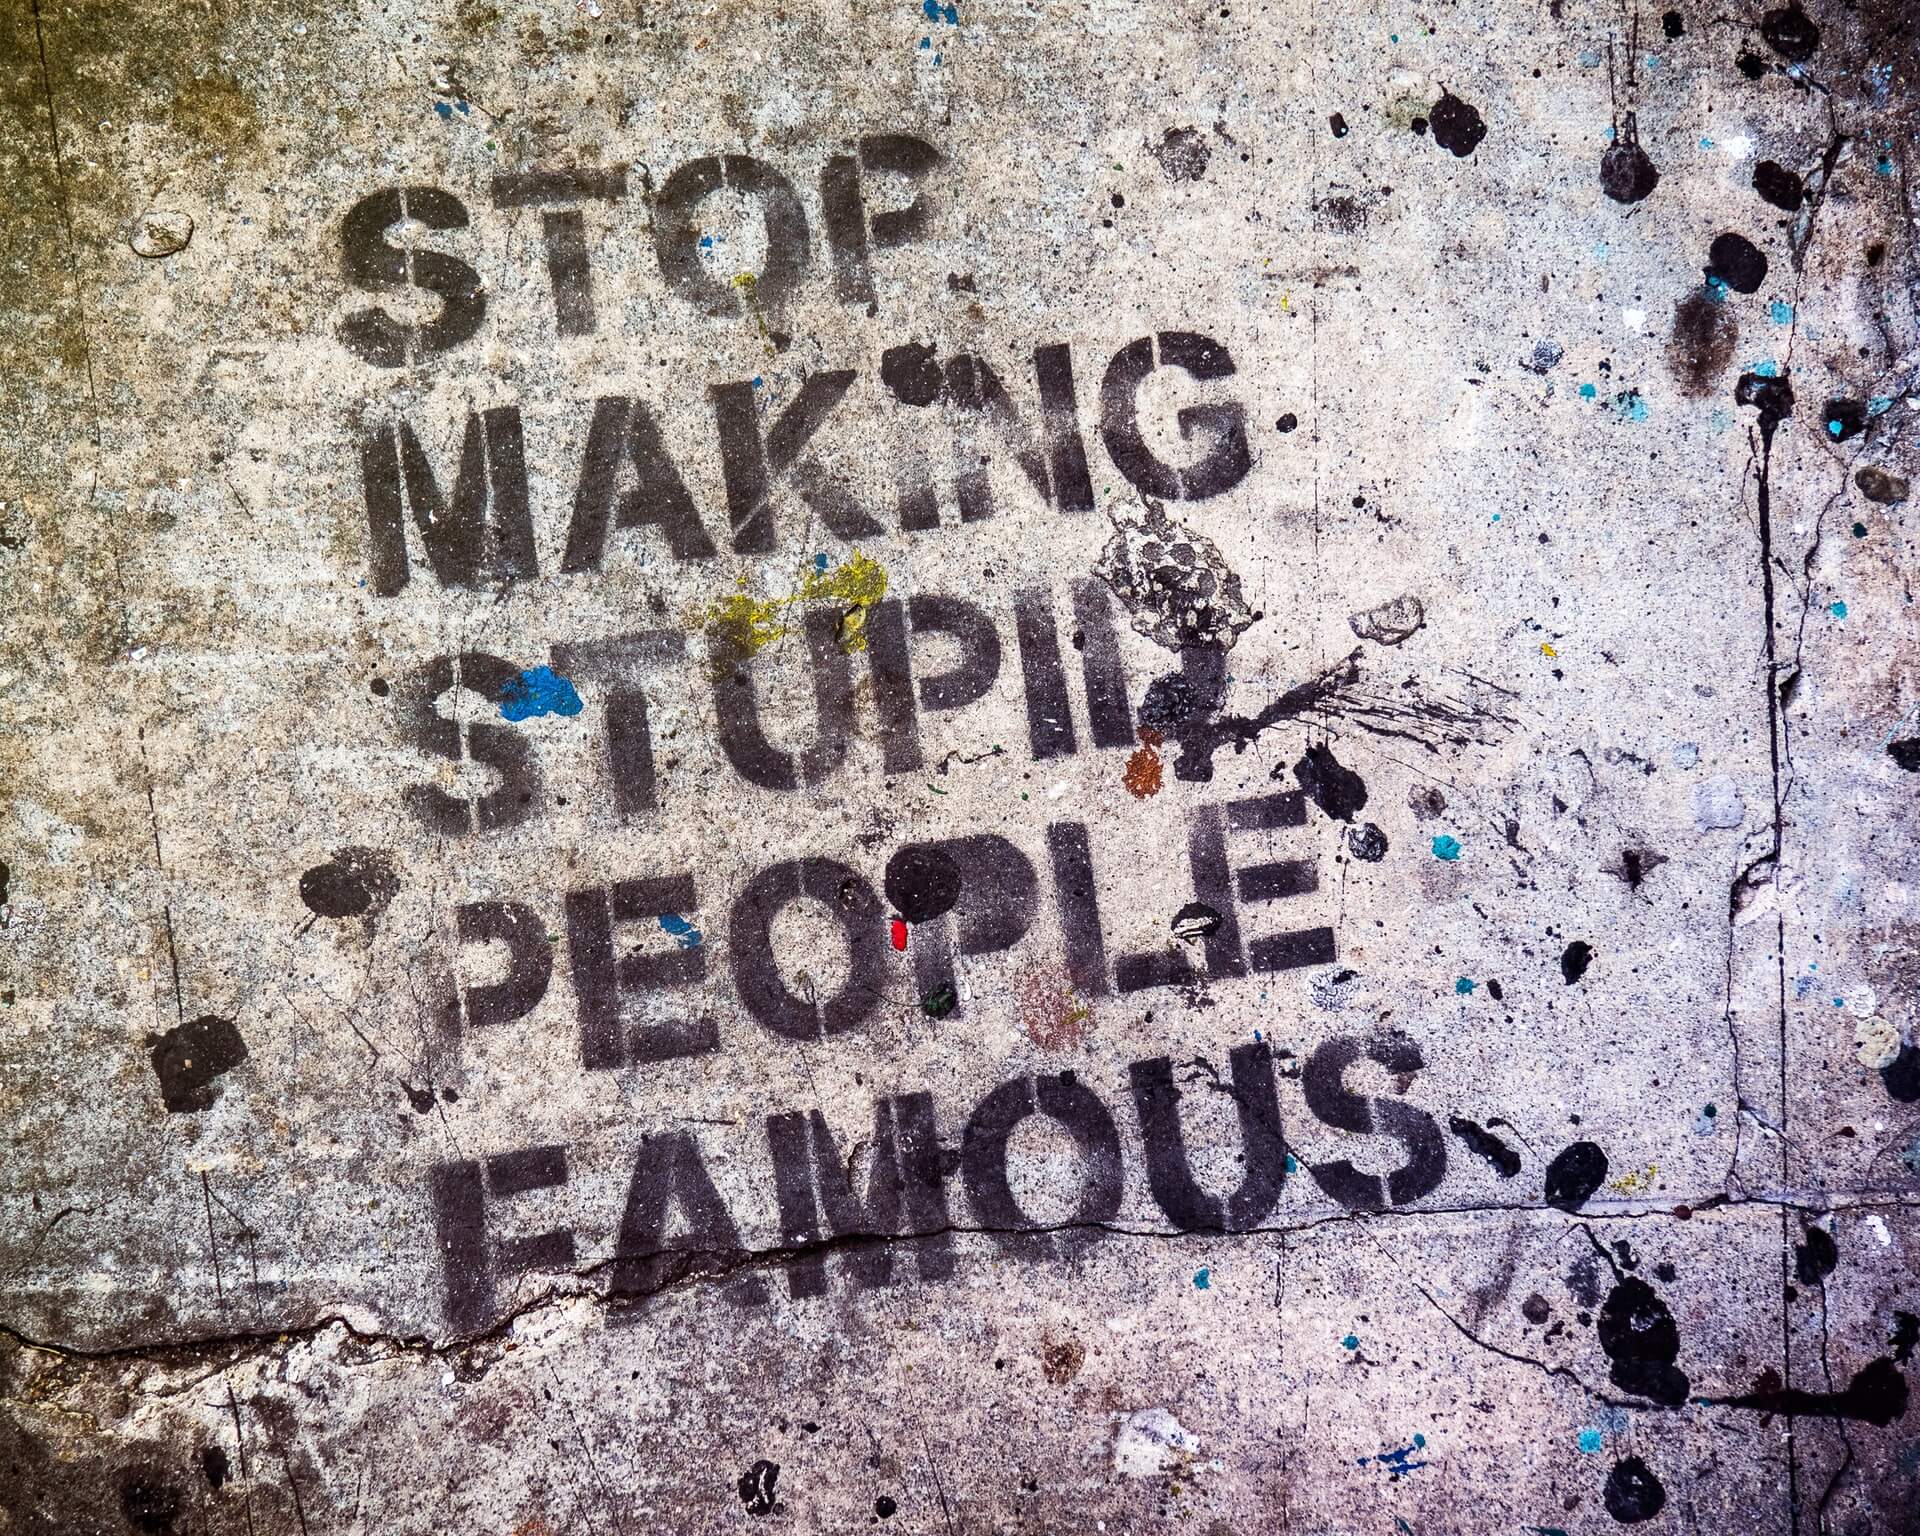 "Stop Making Stupid People Famous" graffiti